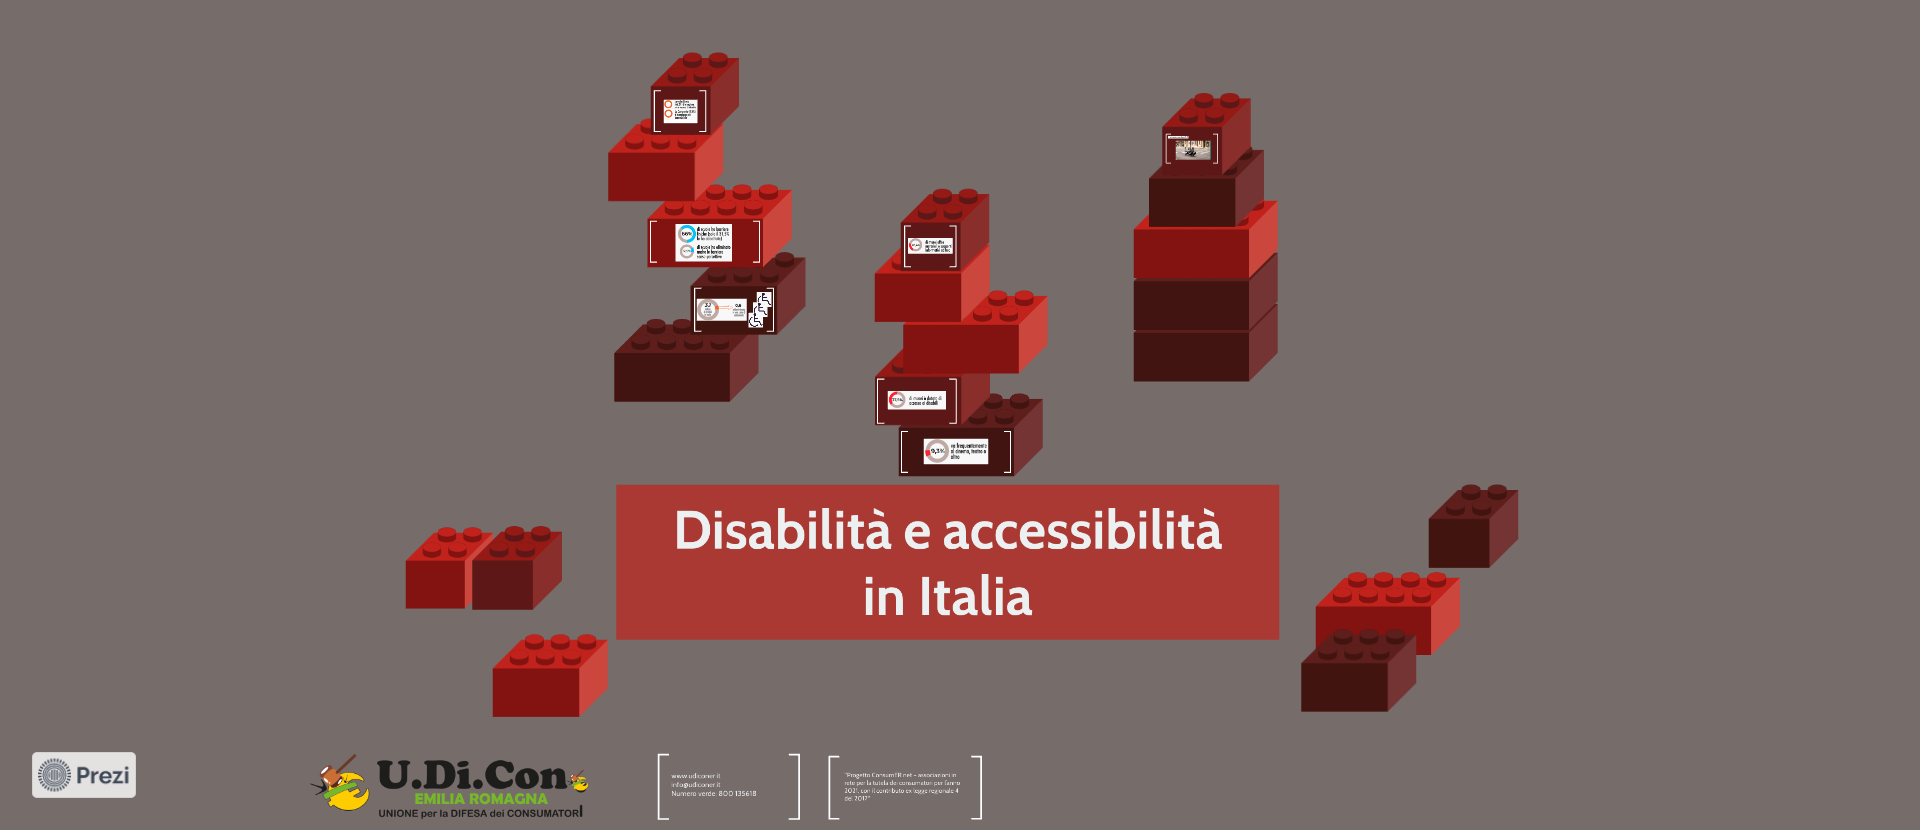 Disabilità e accessibilità in Italia